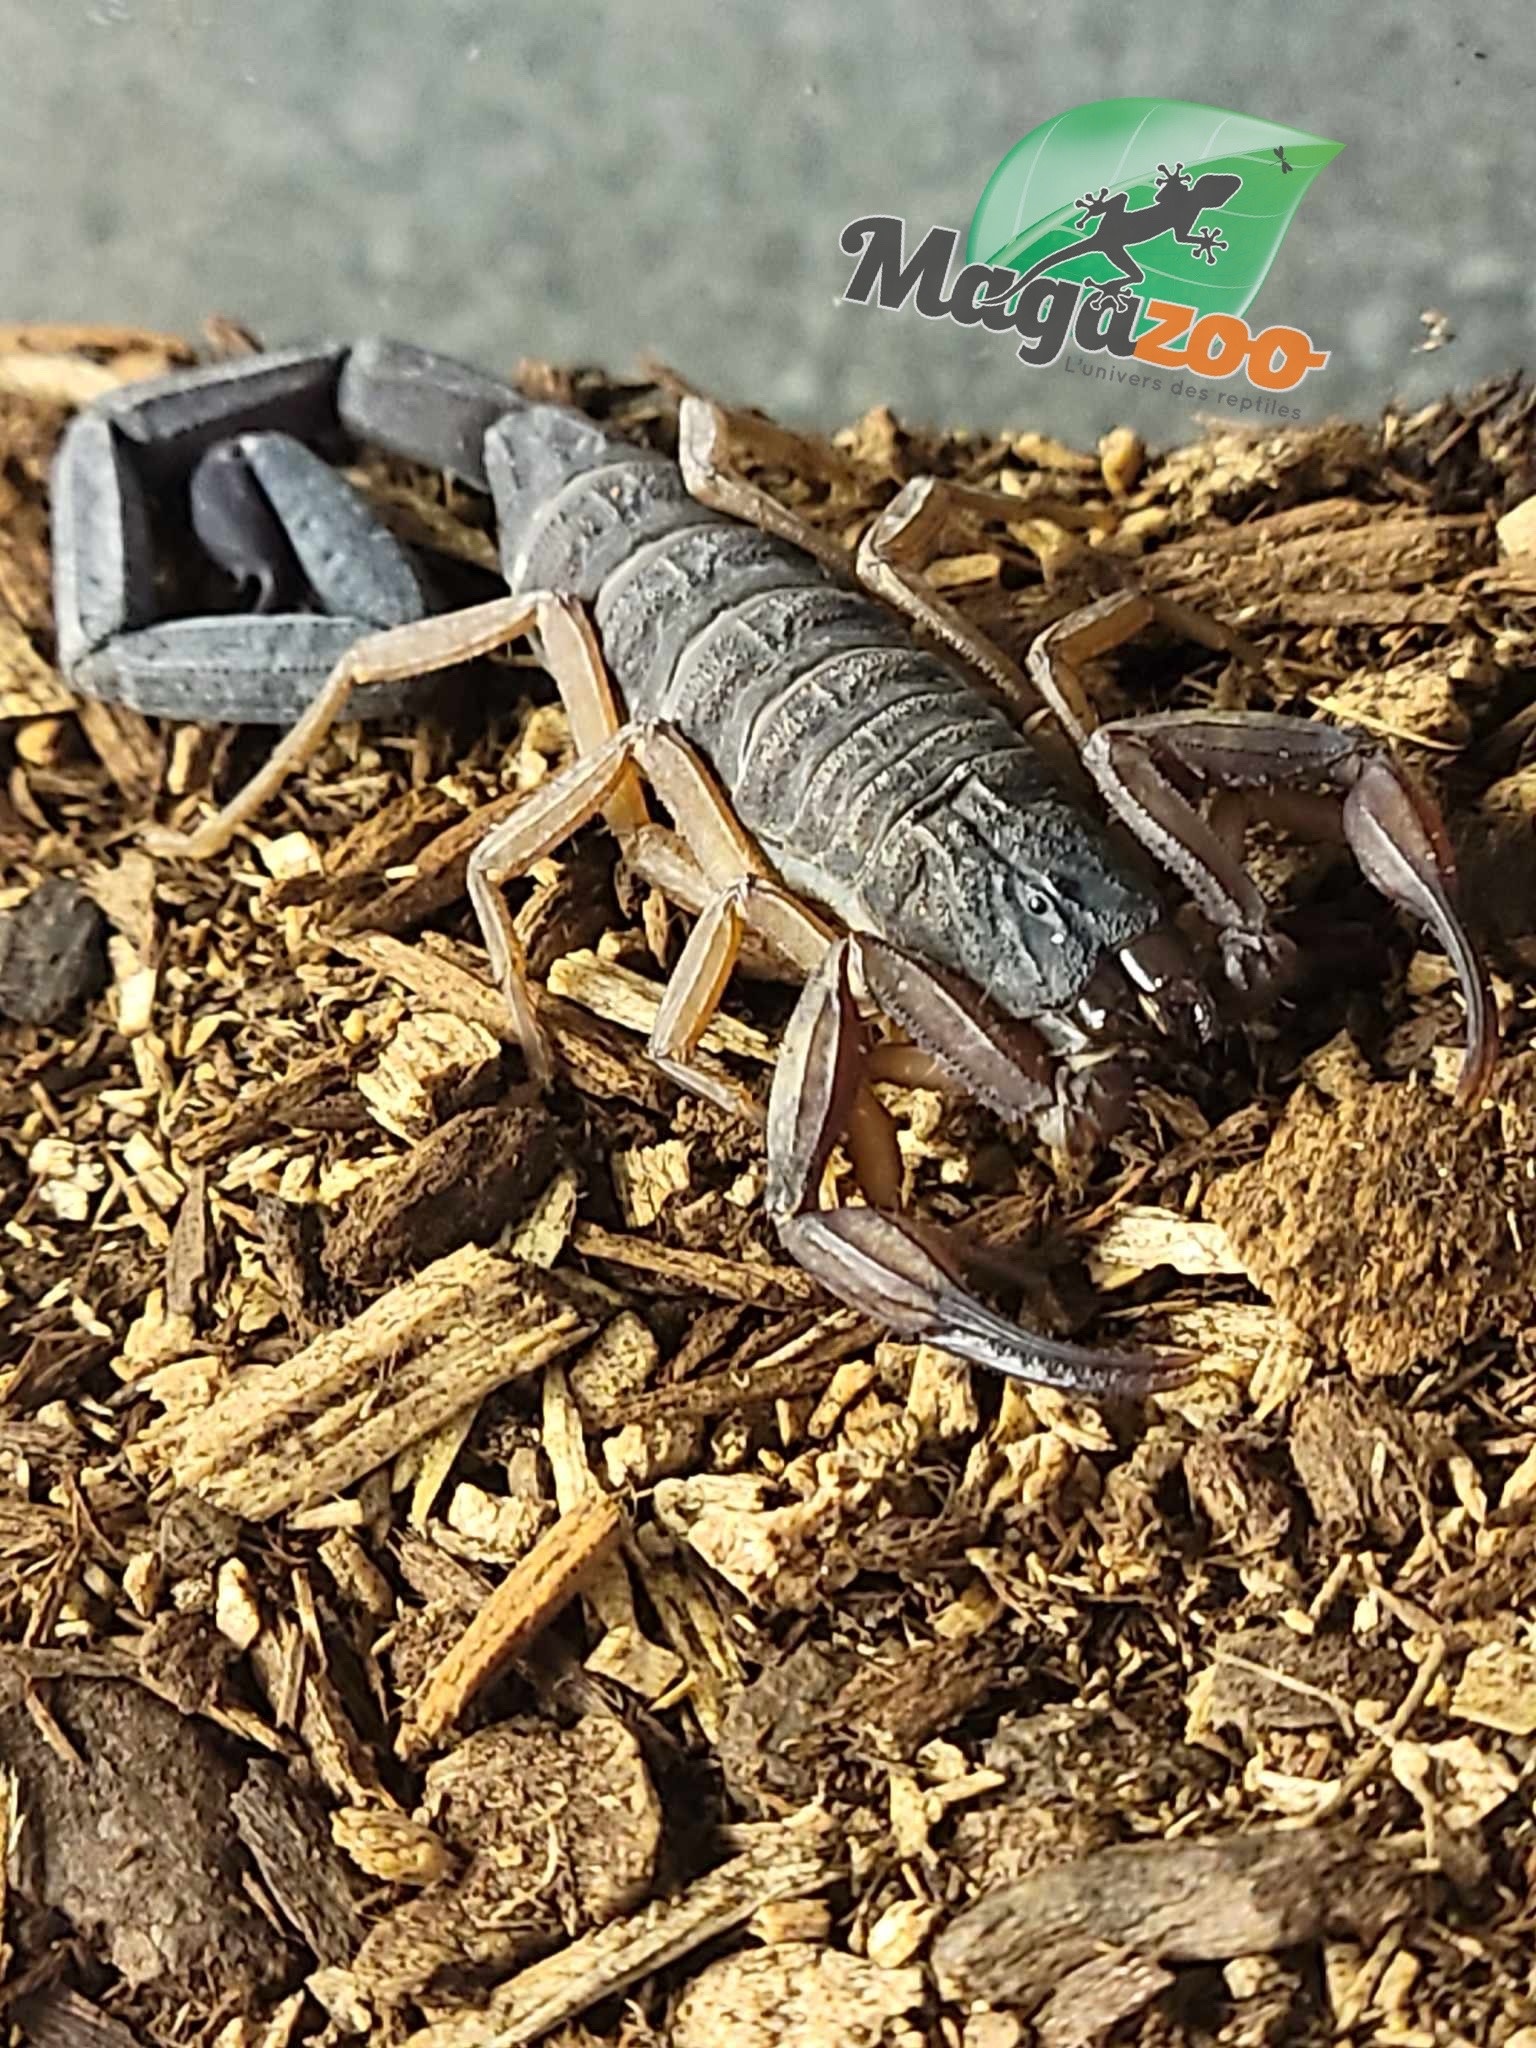 Magazoo Scorpion Bark de Floride /Centruroides gracilis